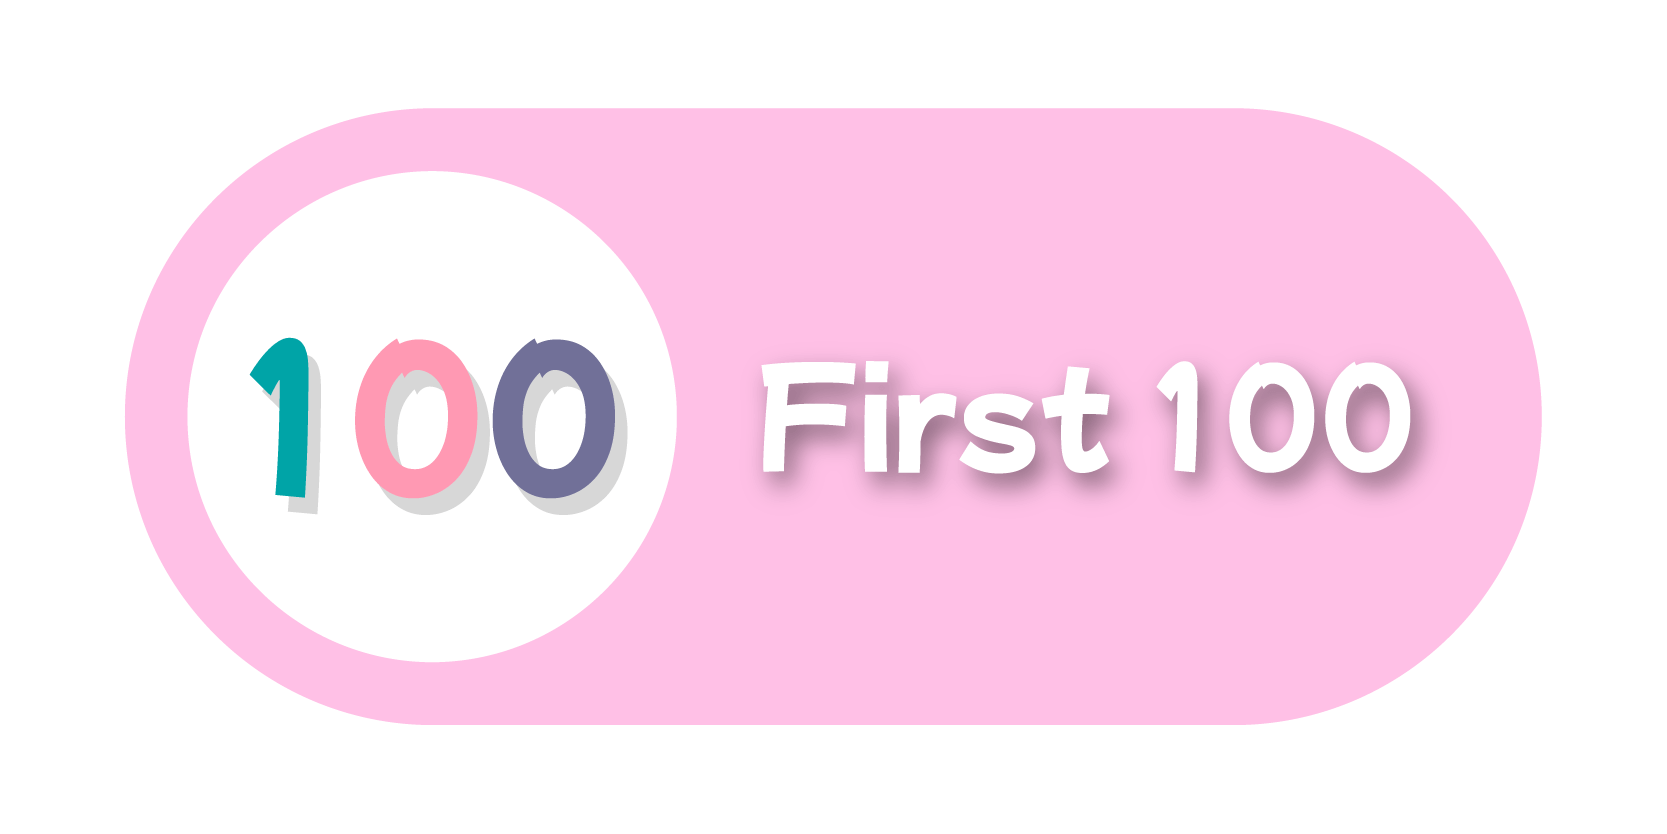 First 100